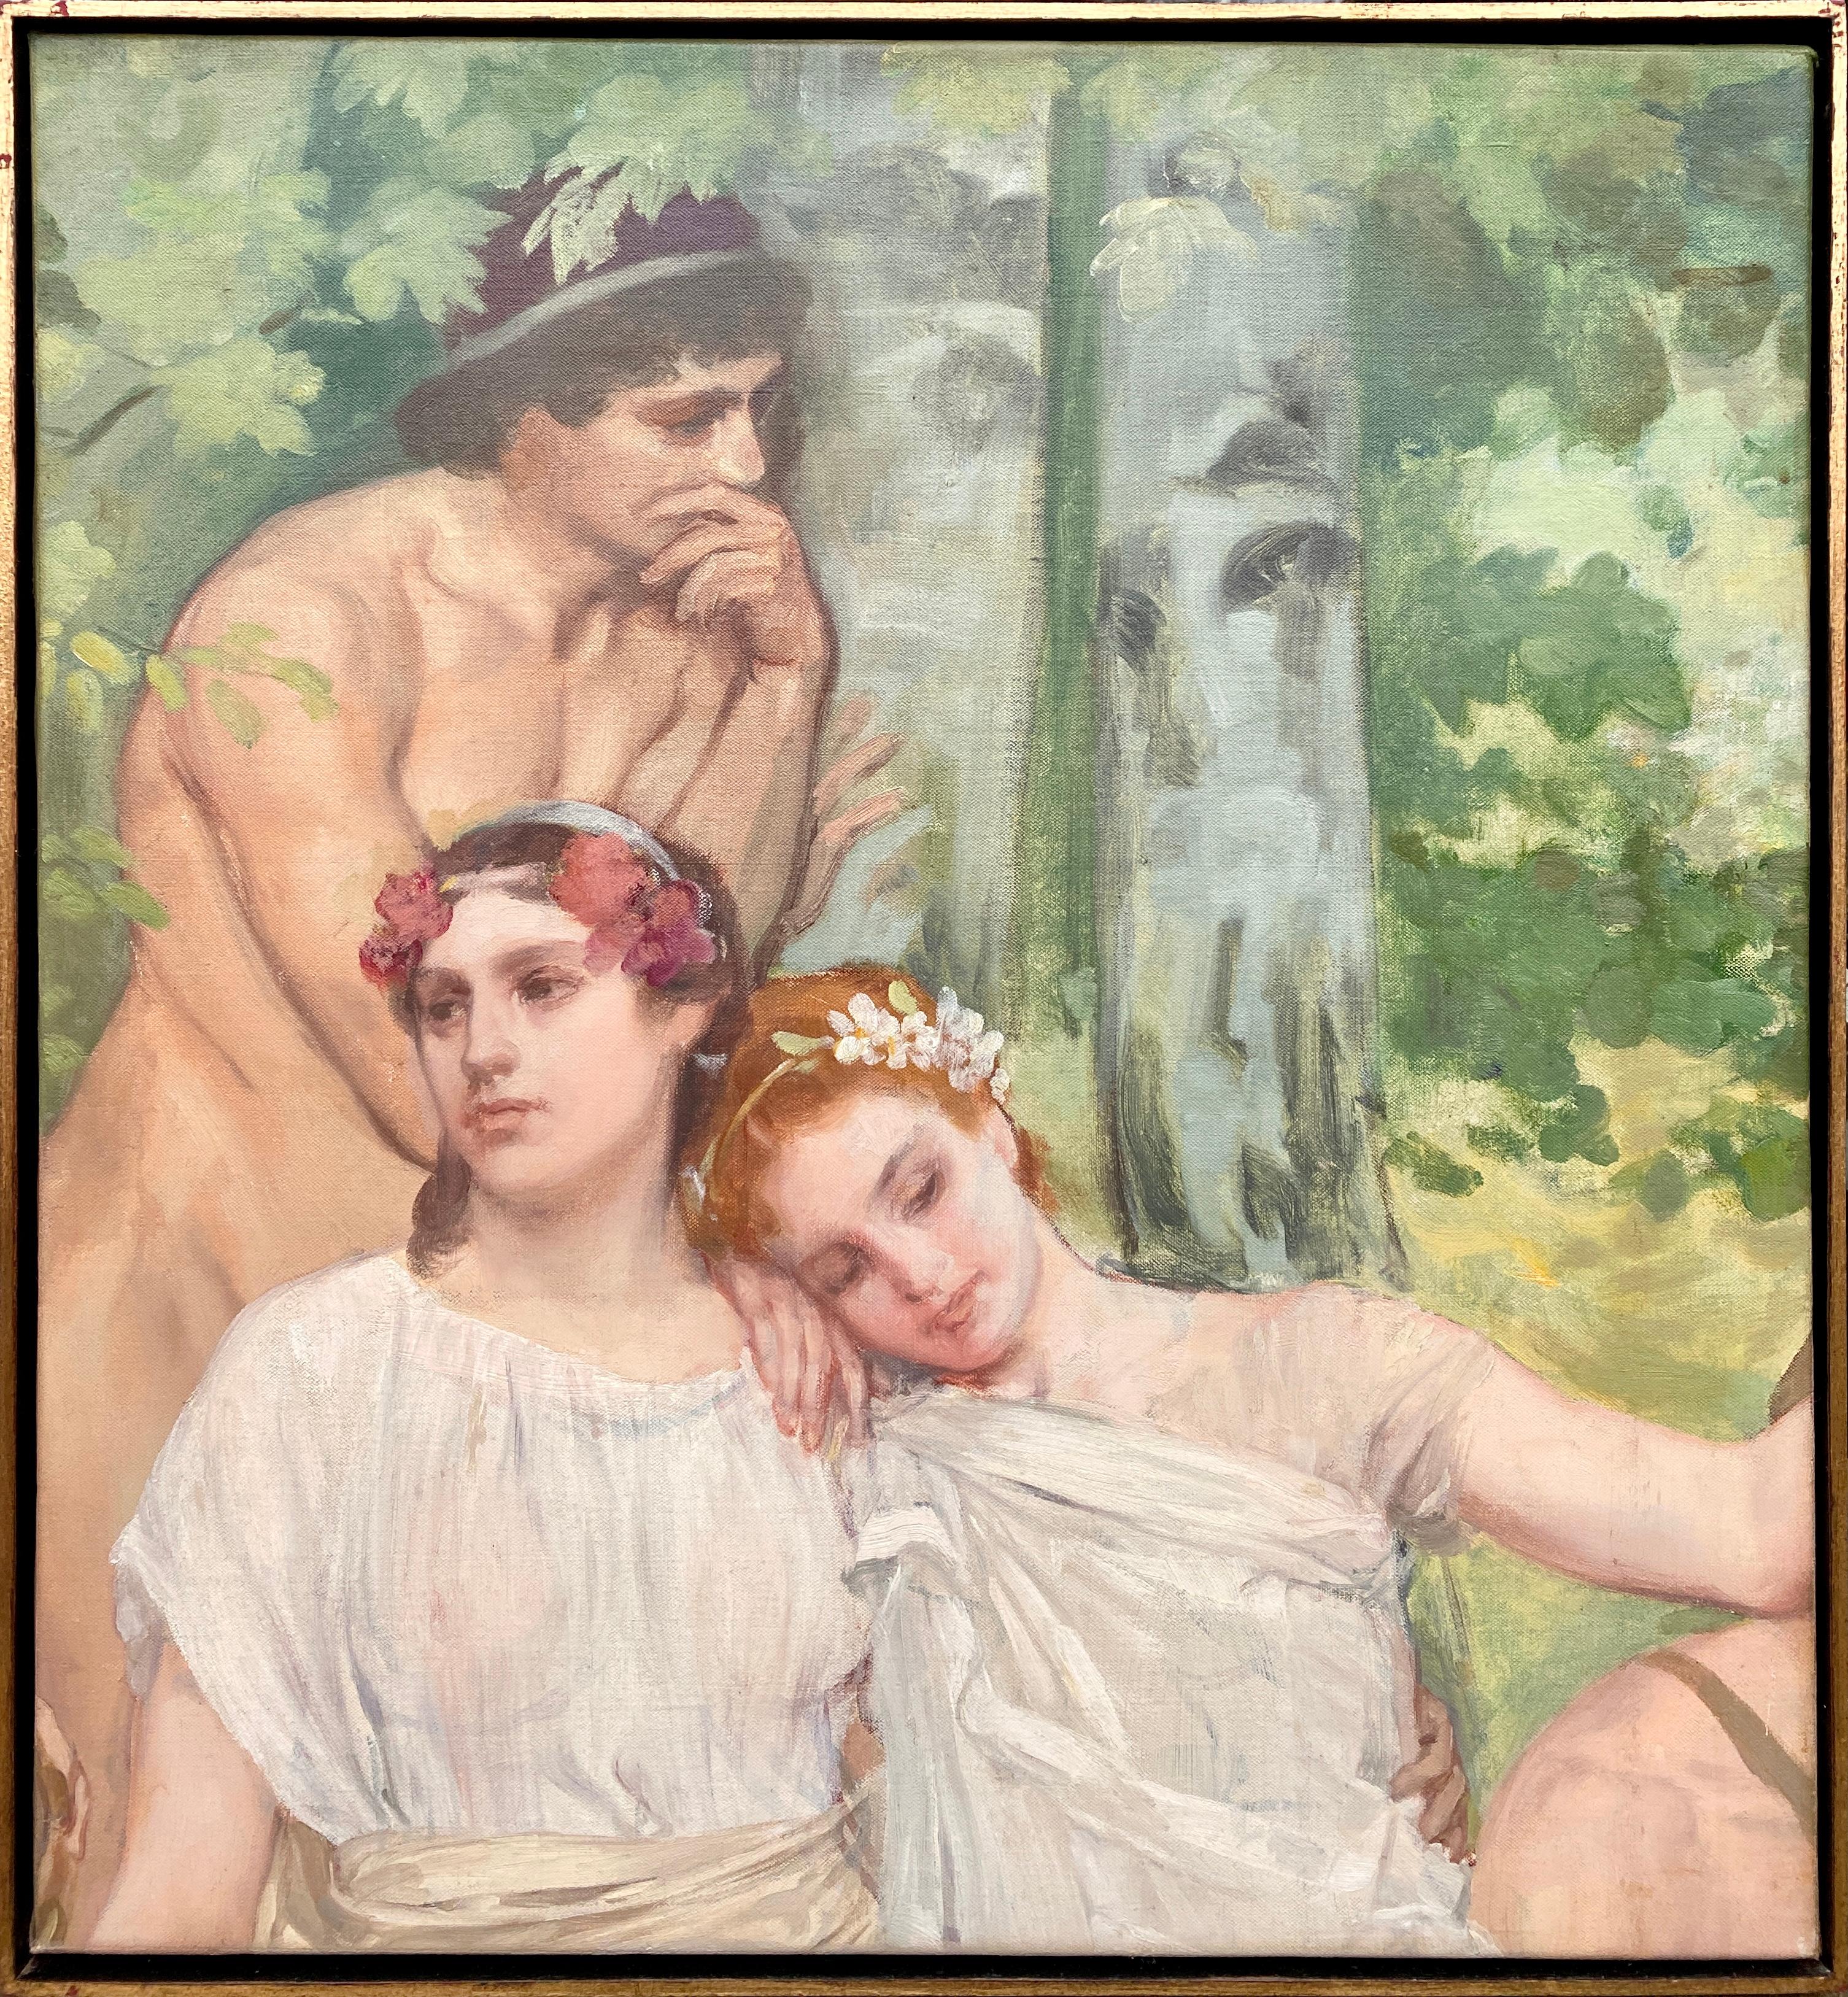 Richir Herman Nude Painting – Romantische Porträts, Herman Richir, Brüssel 1866 - 1942, belgischer Maler